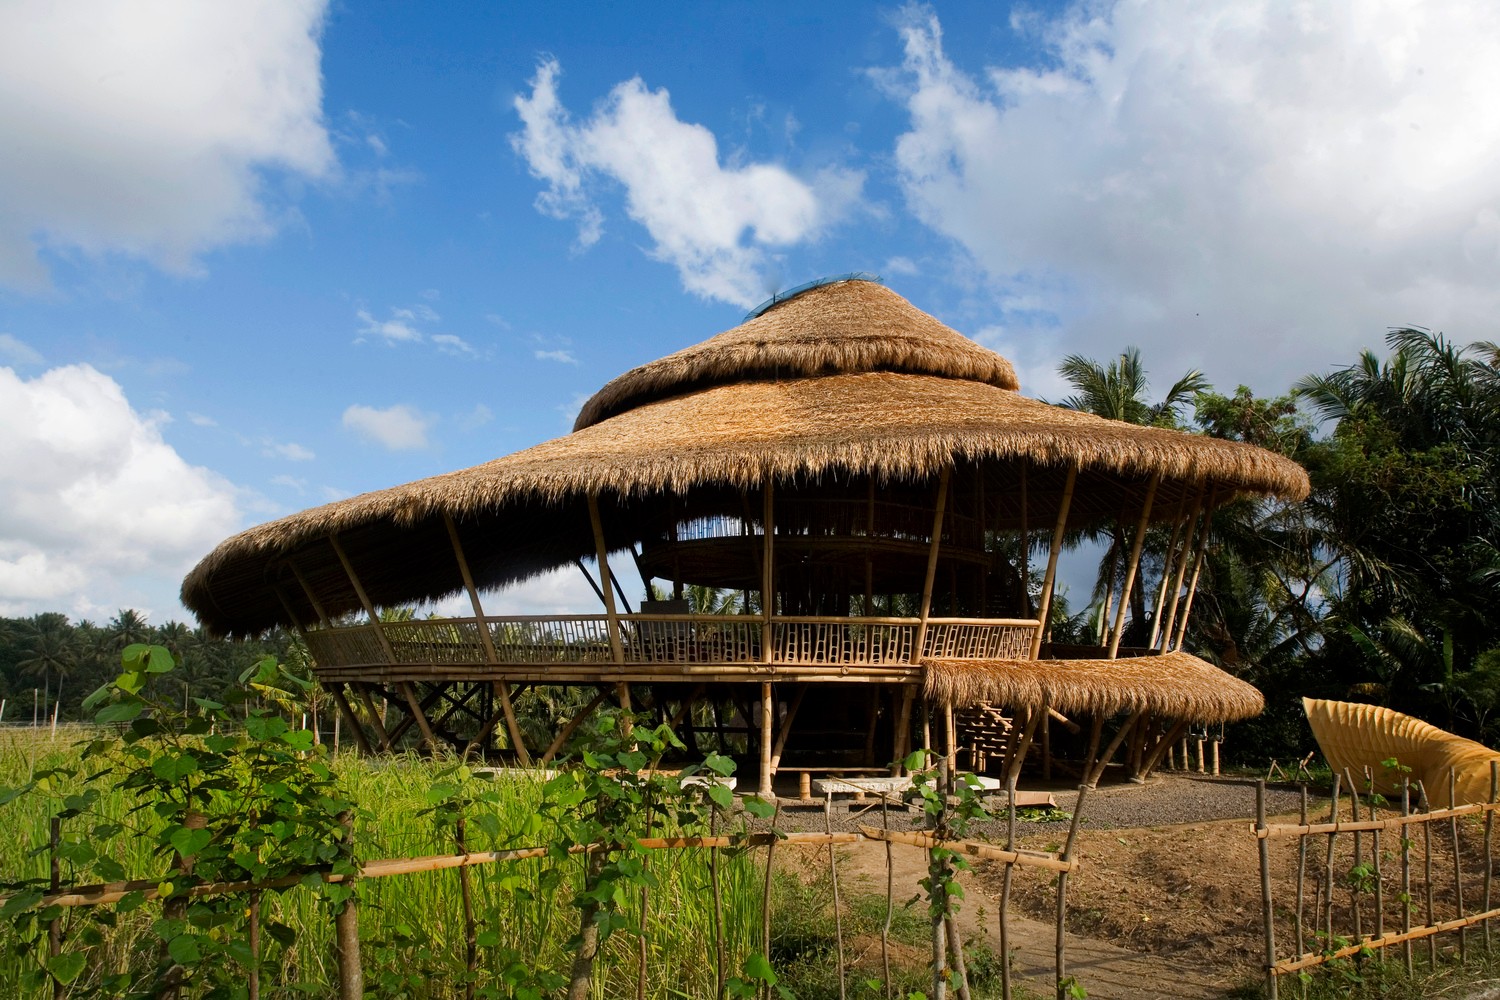 ibuku蜗牛屋,堪称全世界最简陋的竹办公空间 